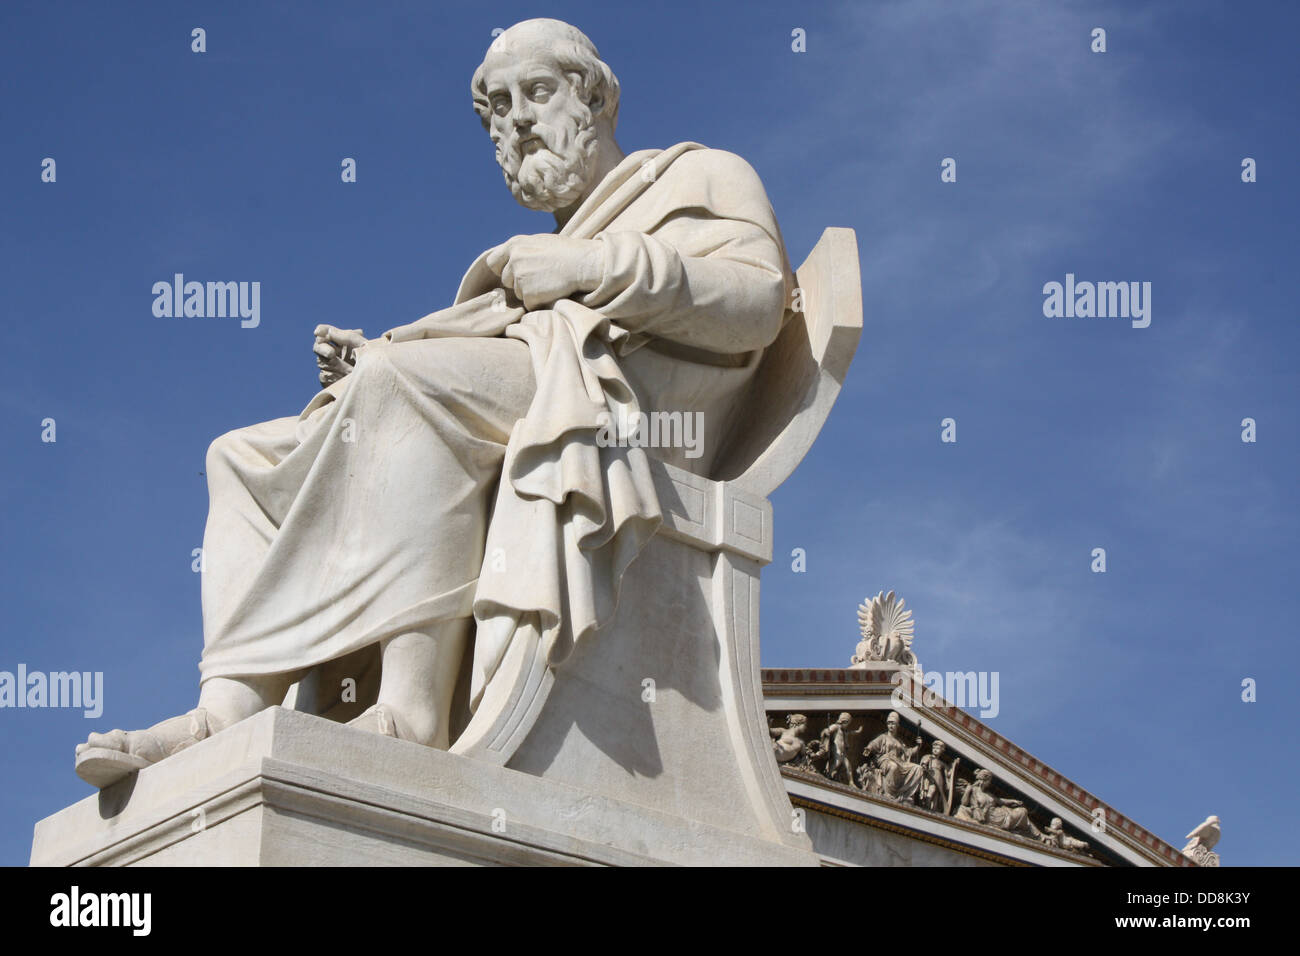 Der griechische Philosoph Platon in Athen, Griechenland Stockfoto